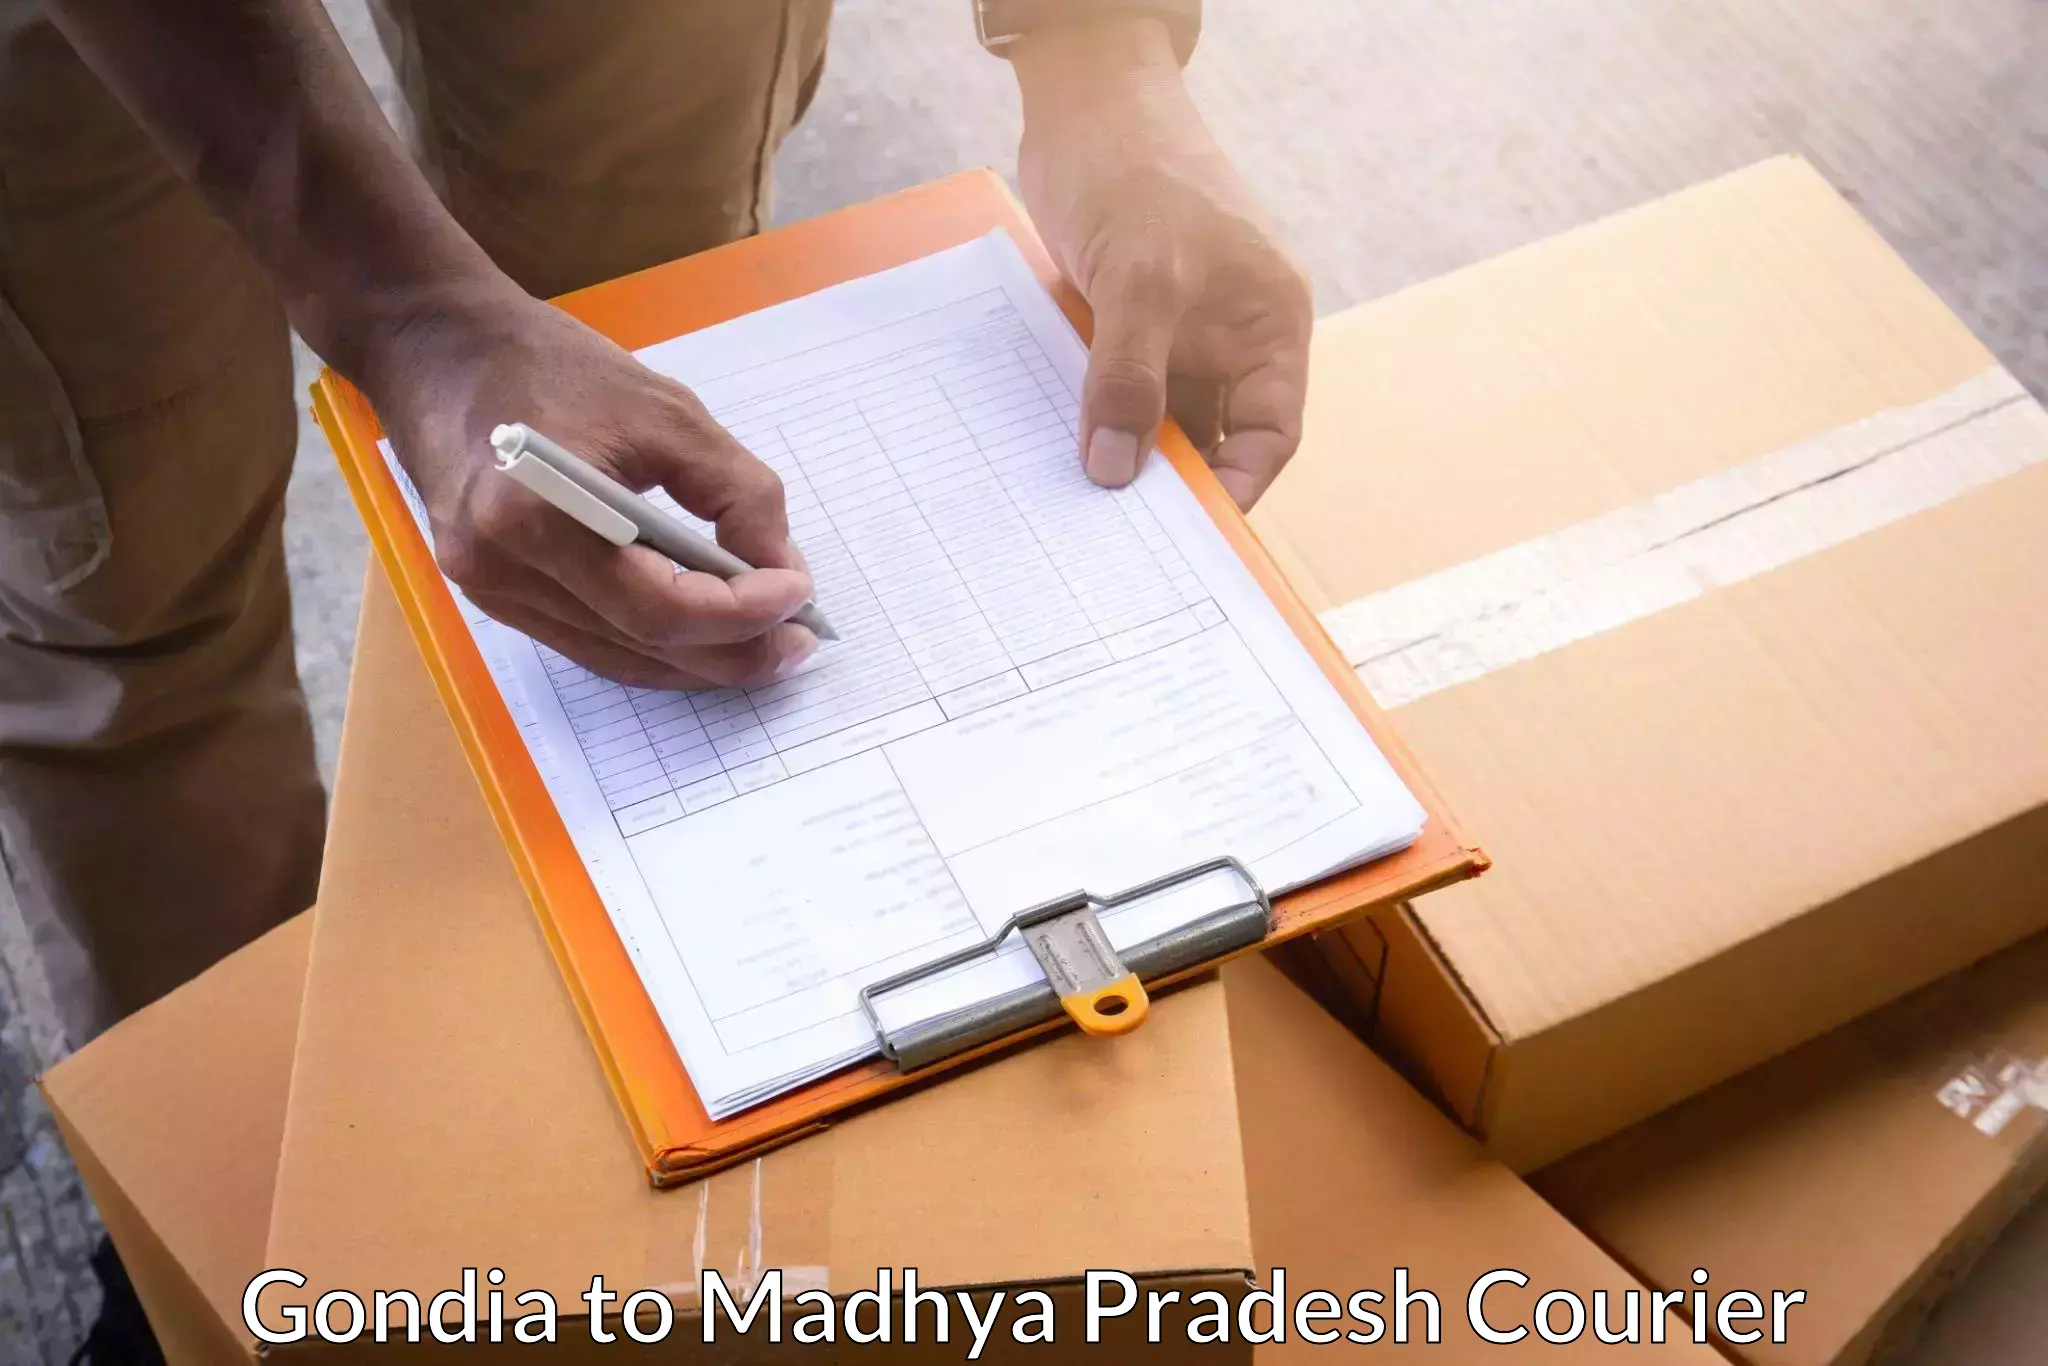 Tailored freight services Gondia to Satna